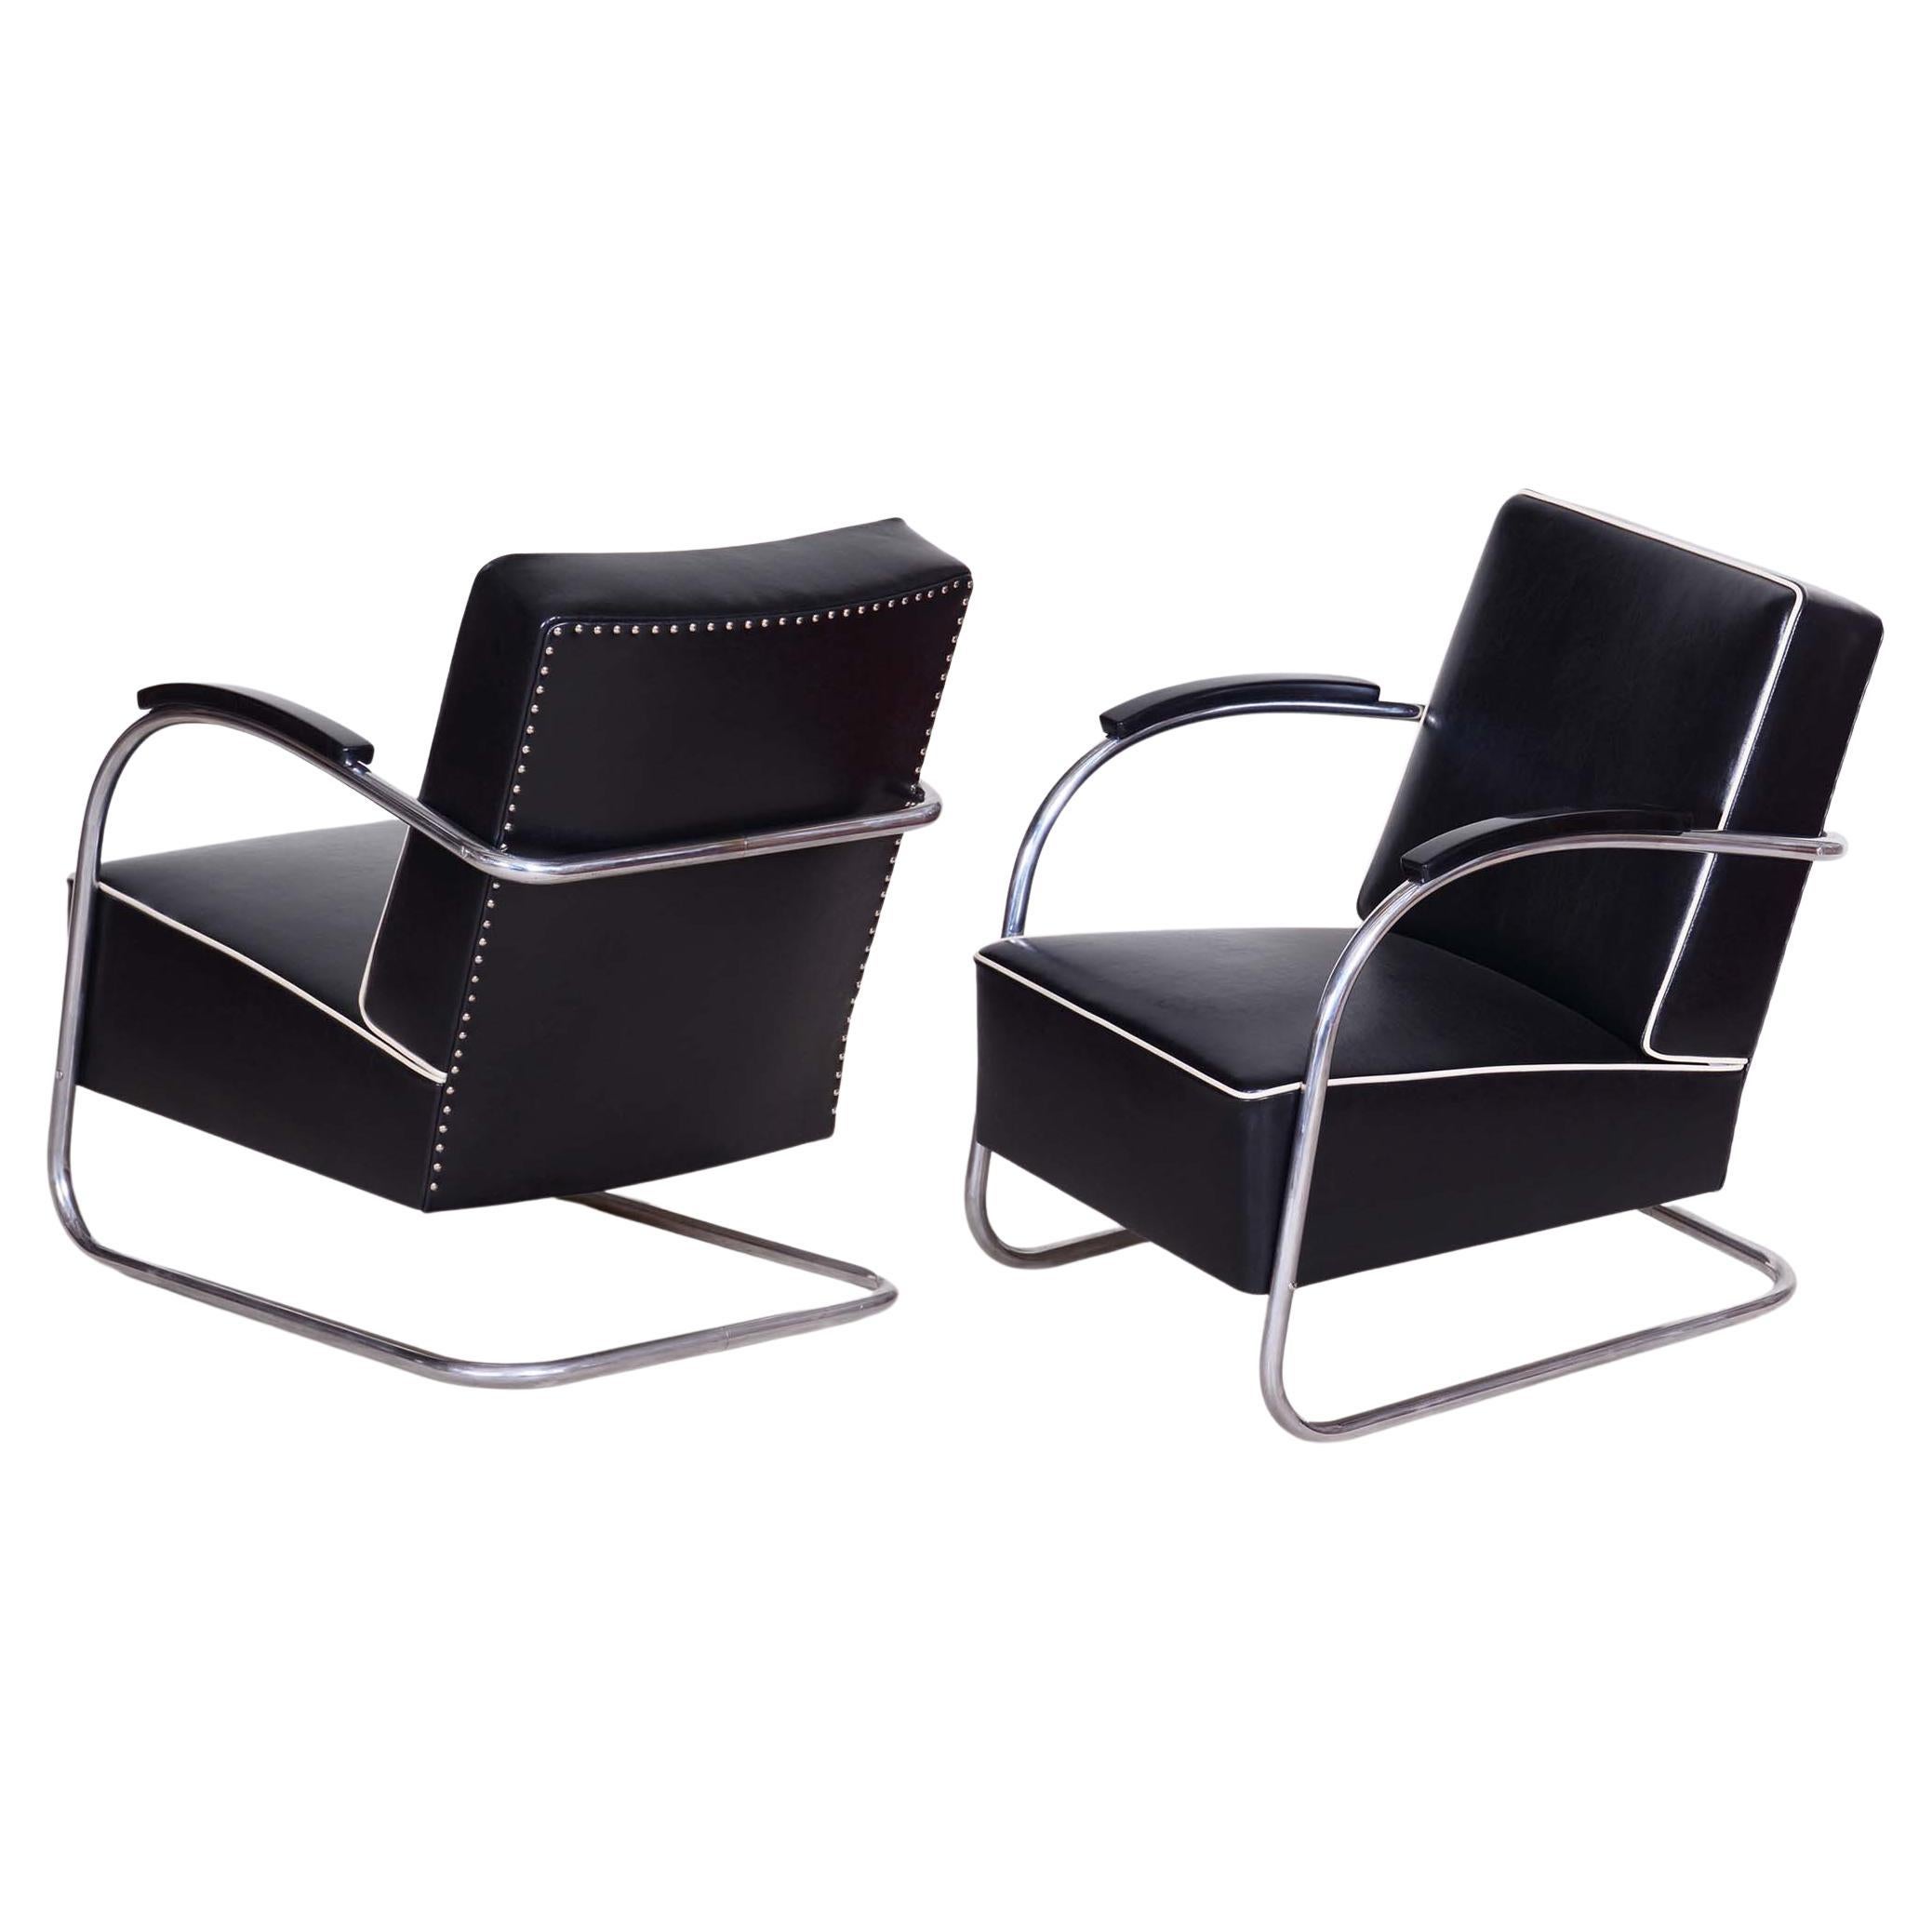 Paar schwarze Bauhaus-Sessel, hergestellt von Mucke Melder in Tschechien in den 1930er Jahren